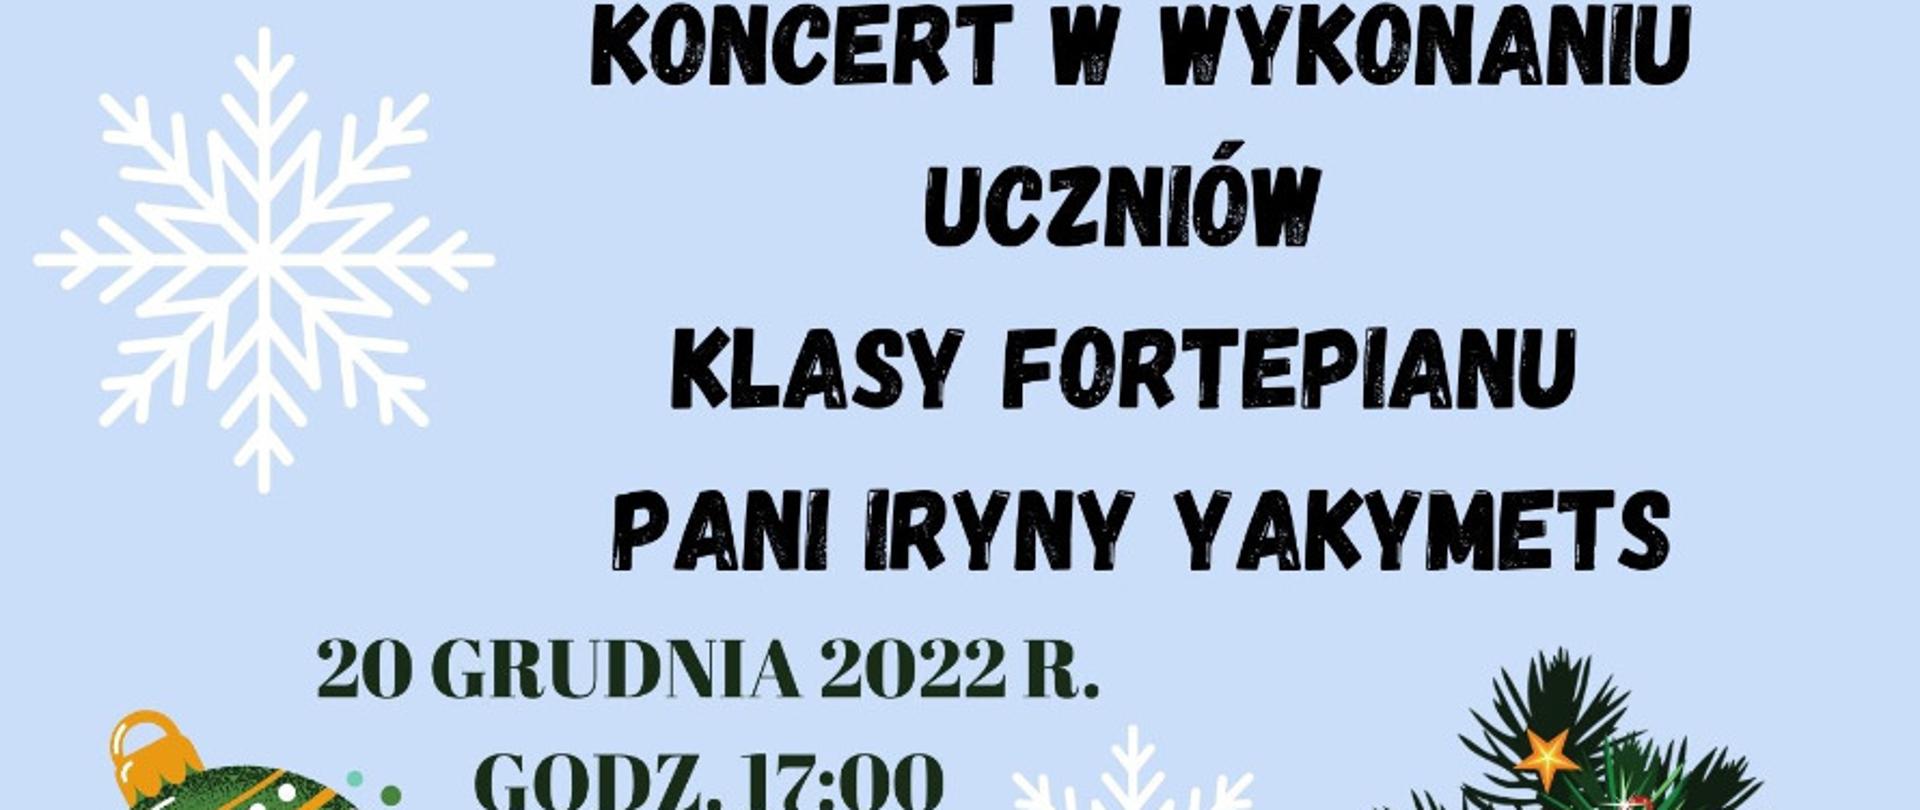 Plakat na jasno-niebieskim tle z dwoma białymi płatkami śniegu, na górze po lewej czarne kontury siedzącej kobiety grającej na fortepianie oraz napis czarny napis Państwowa Szkoła Muzyczna I i II stopnia w Bystrzycy Kłodzkiej zaprasza, na środku czarny pogrubiony napis Koncert w wykonaniu uczniów klasy fortepianu pani Iryny Yakymets 20 grudnia 2022 roku godzina 17.00, na dole obrazki bombki, kontury budynków miasta, renifera oraz choinki, po lewej napis Sala Koncertowa PSM I i II st.